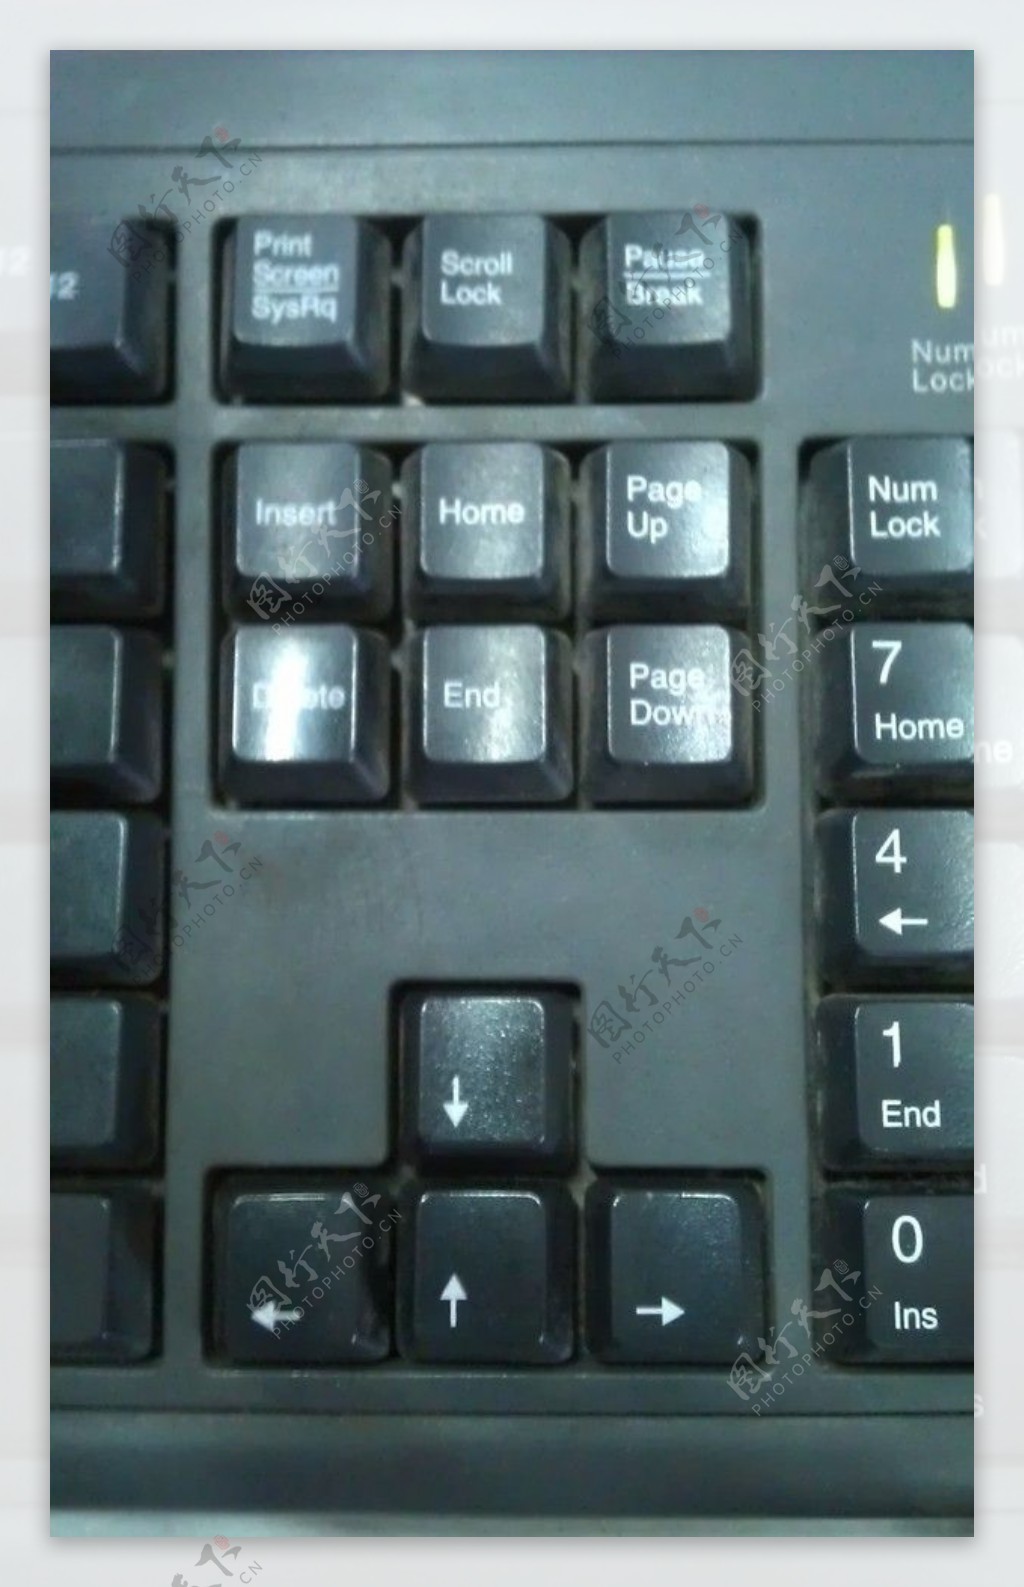 电脑键盘图片